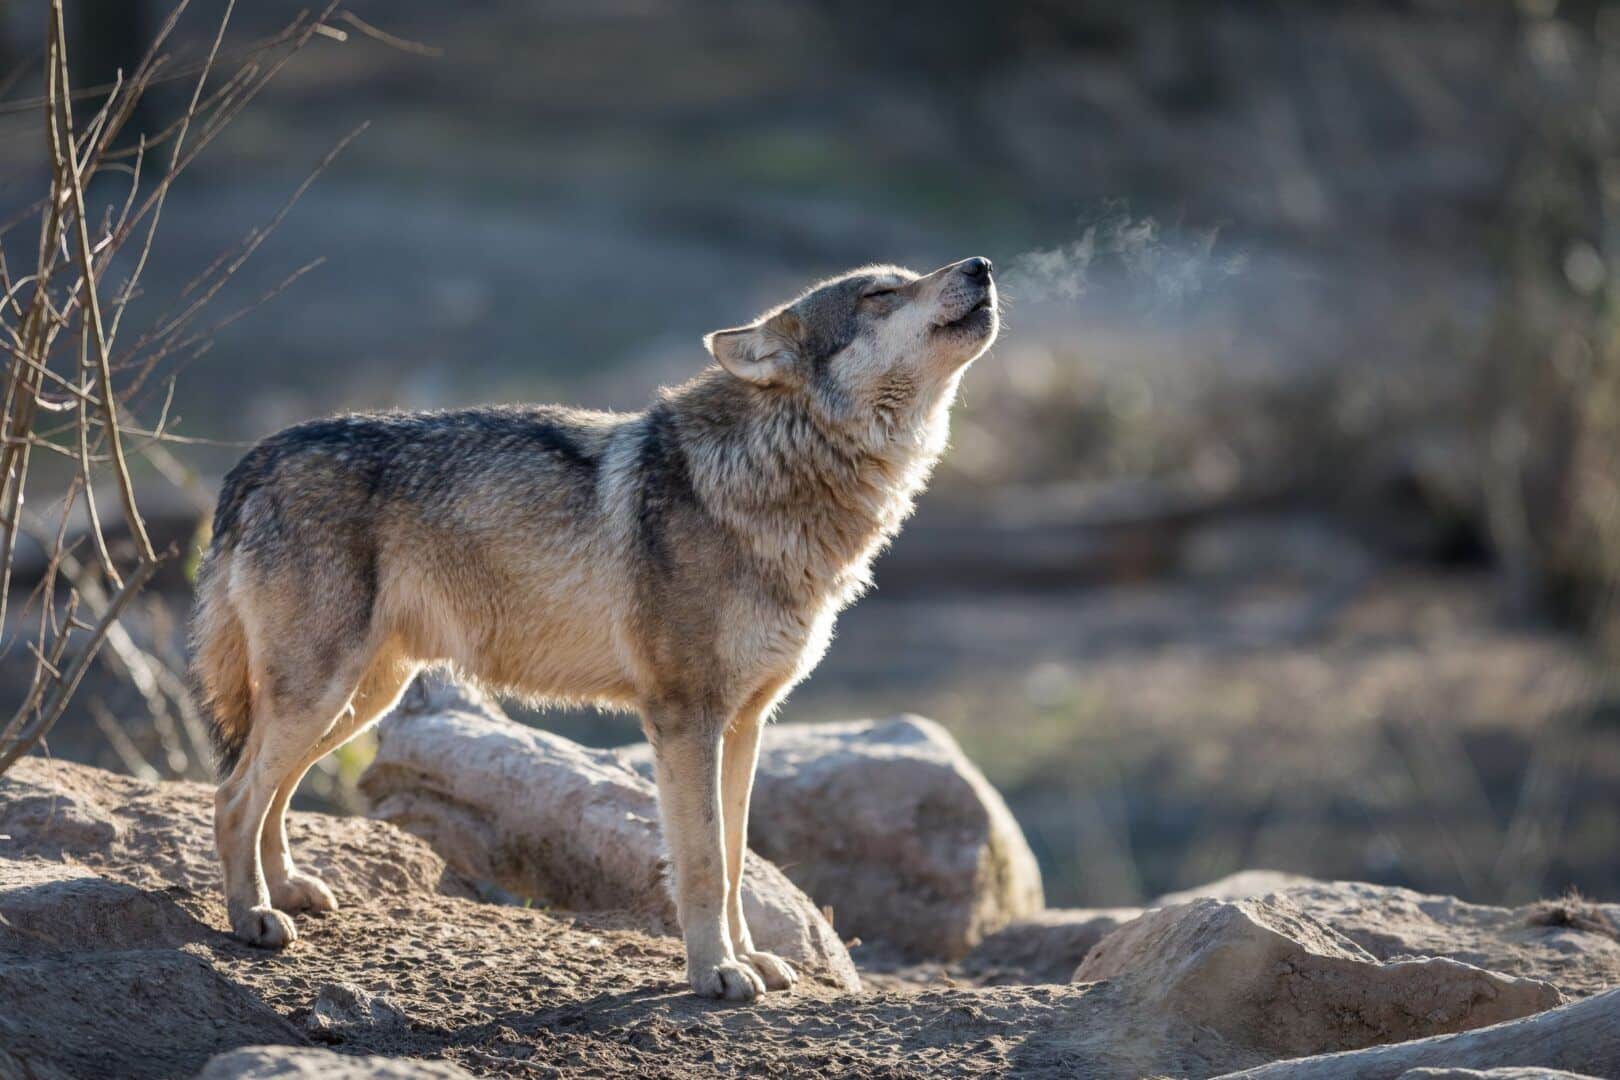 Lobos - características, hábitos e principais variações da espécie